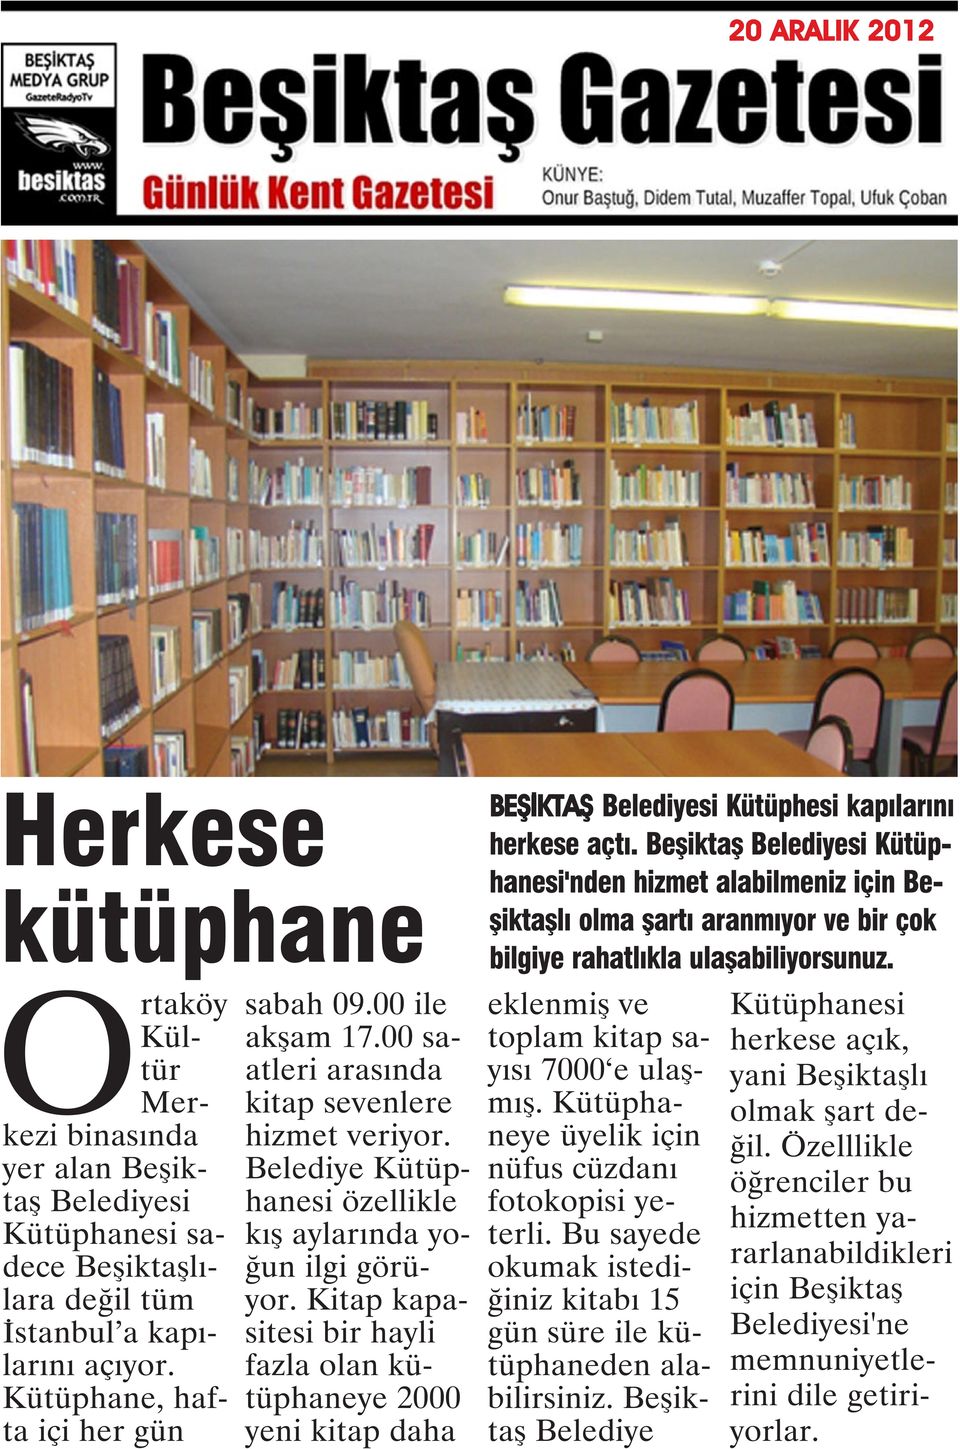 Kitap kapasitesi bir hayli fazla olan kütüphaneye 2000 yeni kitap daha BEŞİKTAŞ Belediyesi Kütüphesi kapılarını herkese açtı.